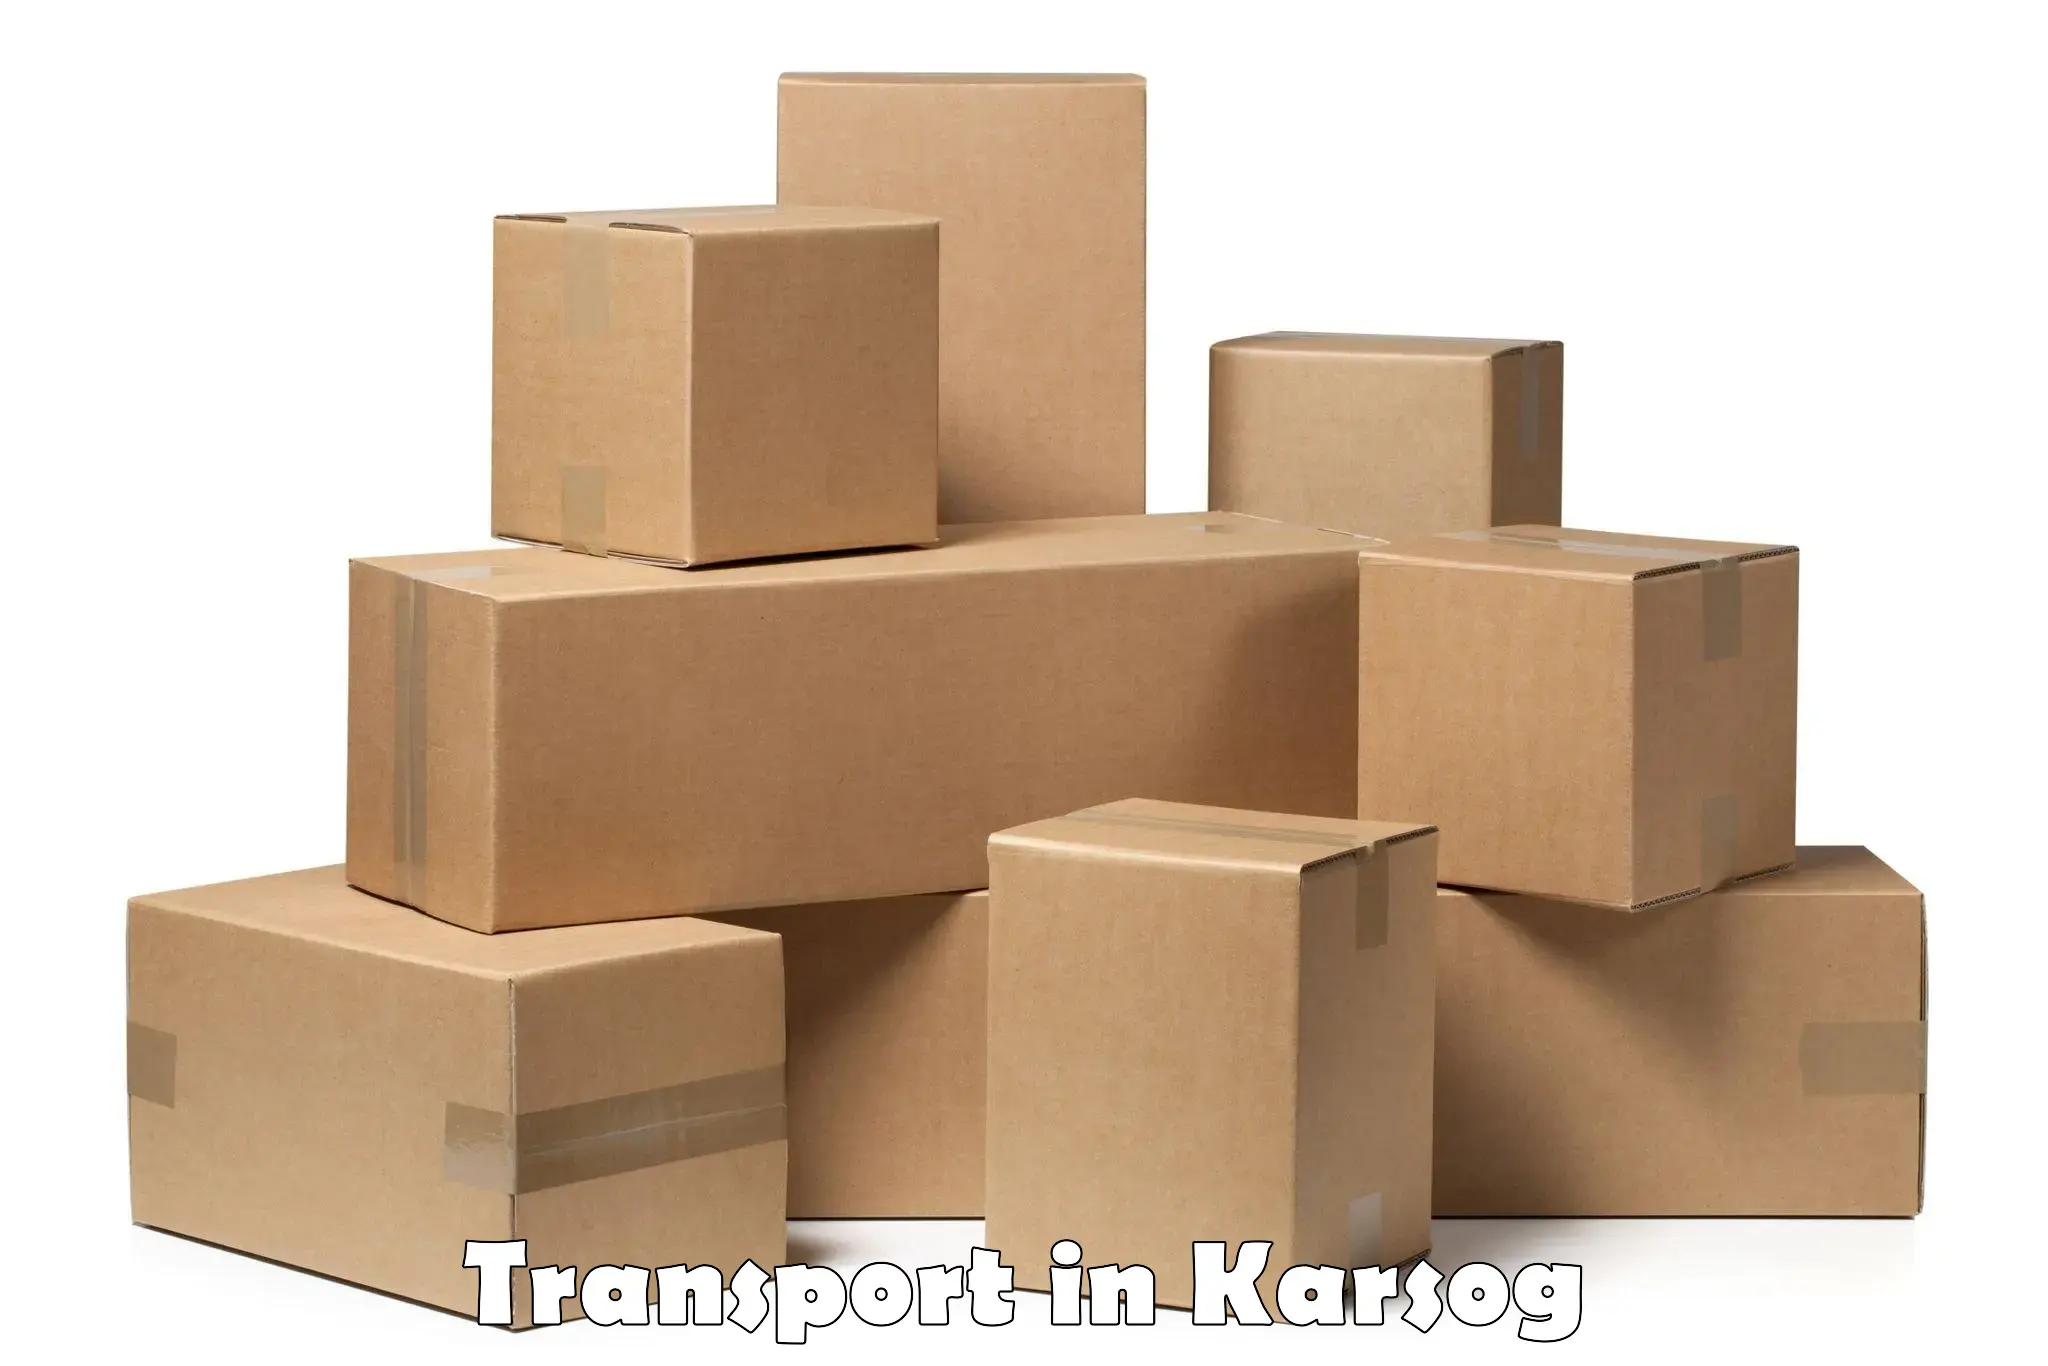 Interstate transport services in Karsog